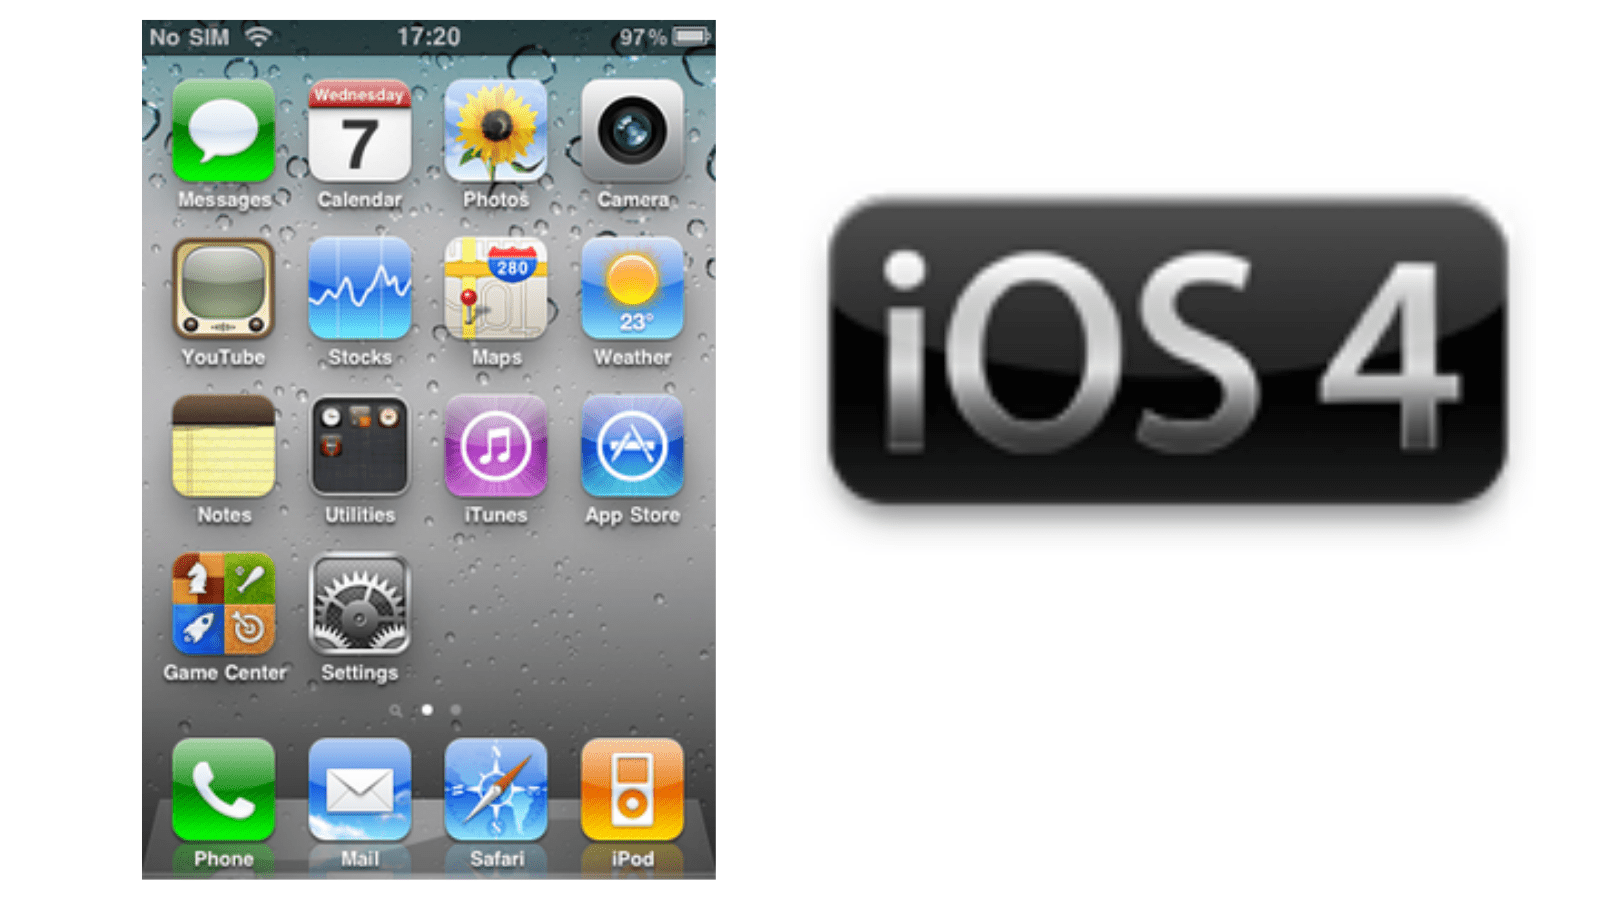 iOS 4.0 the history of iOS